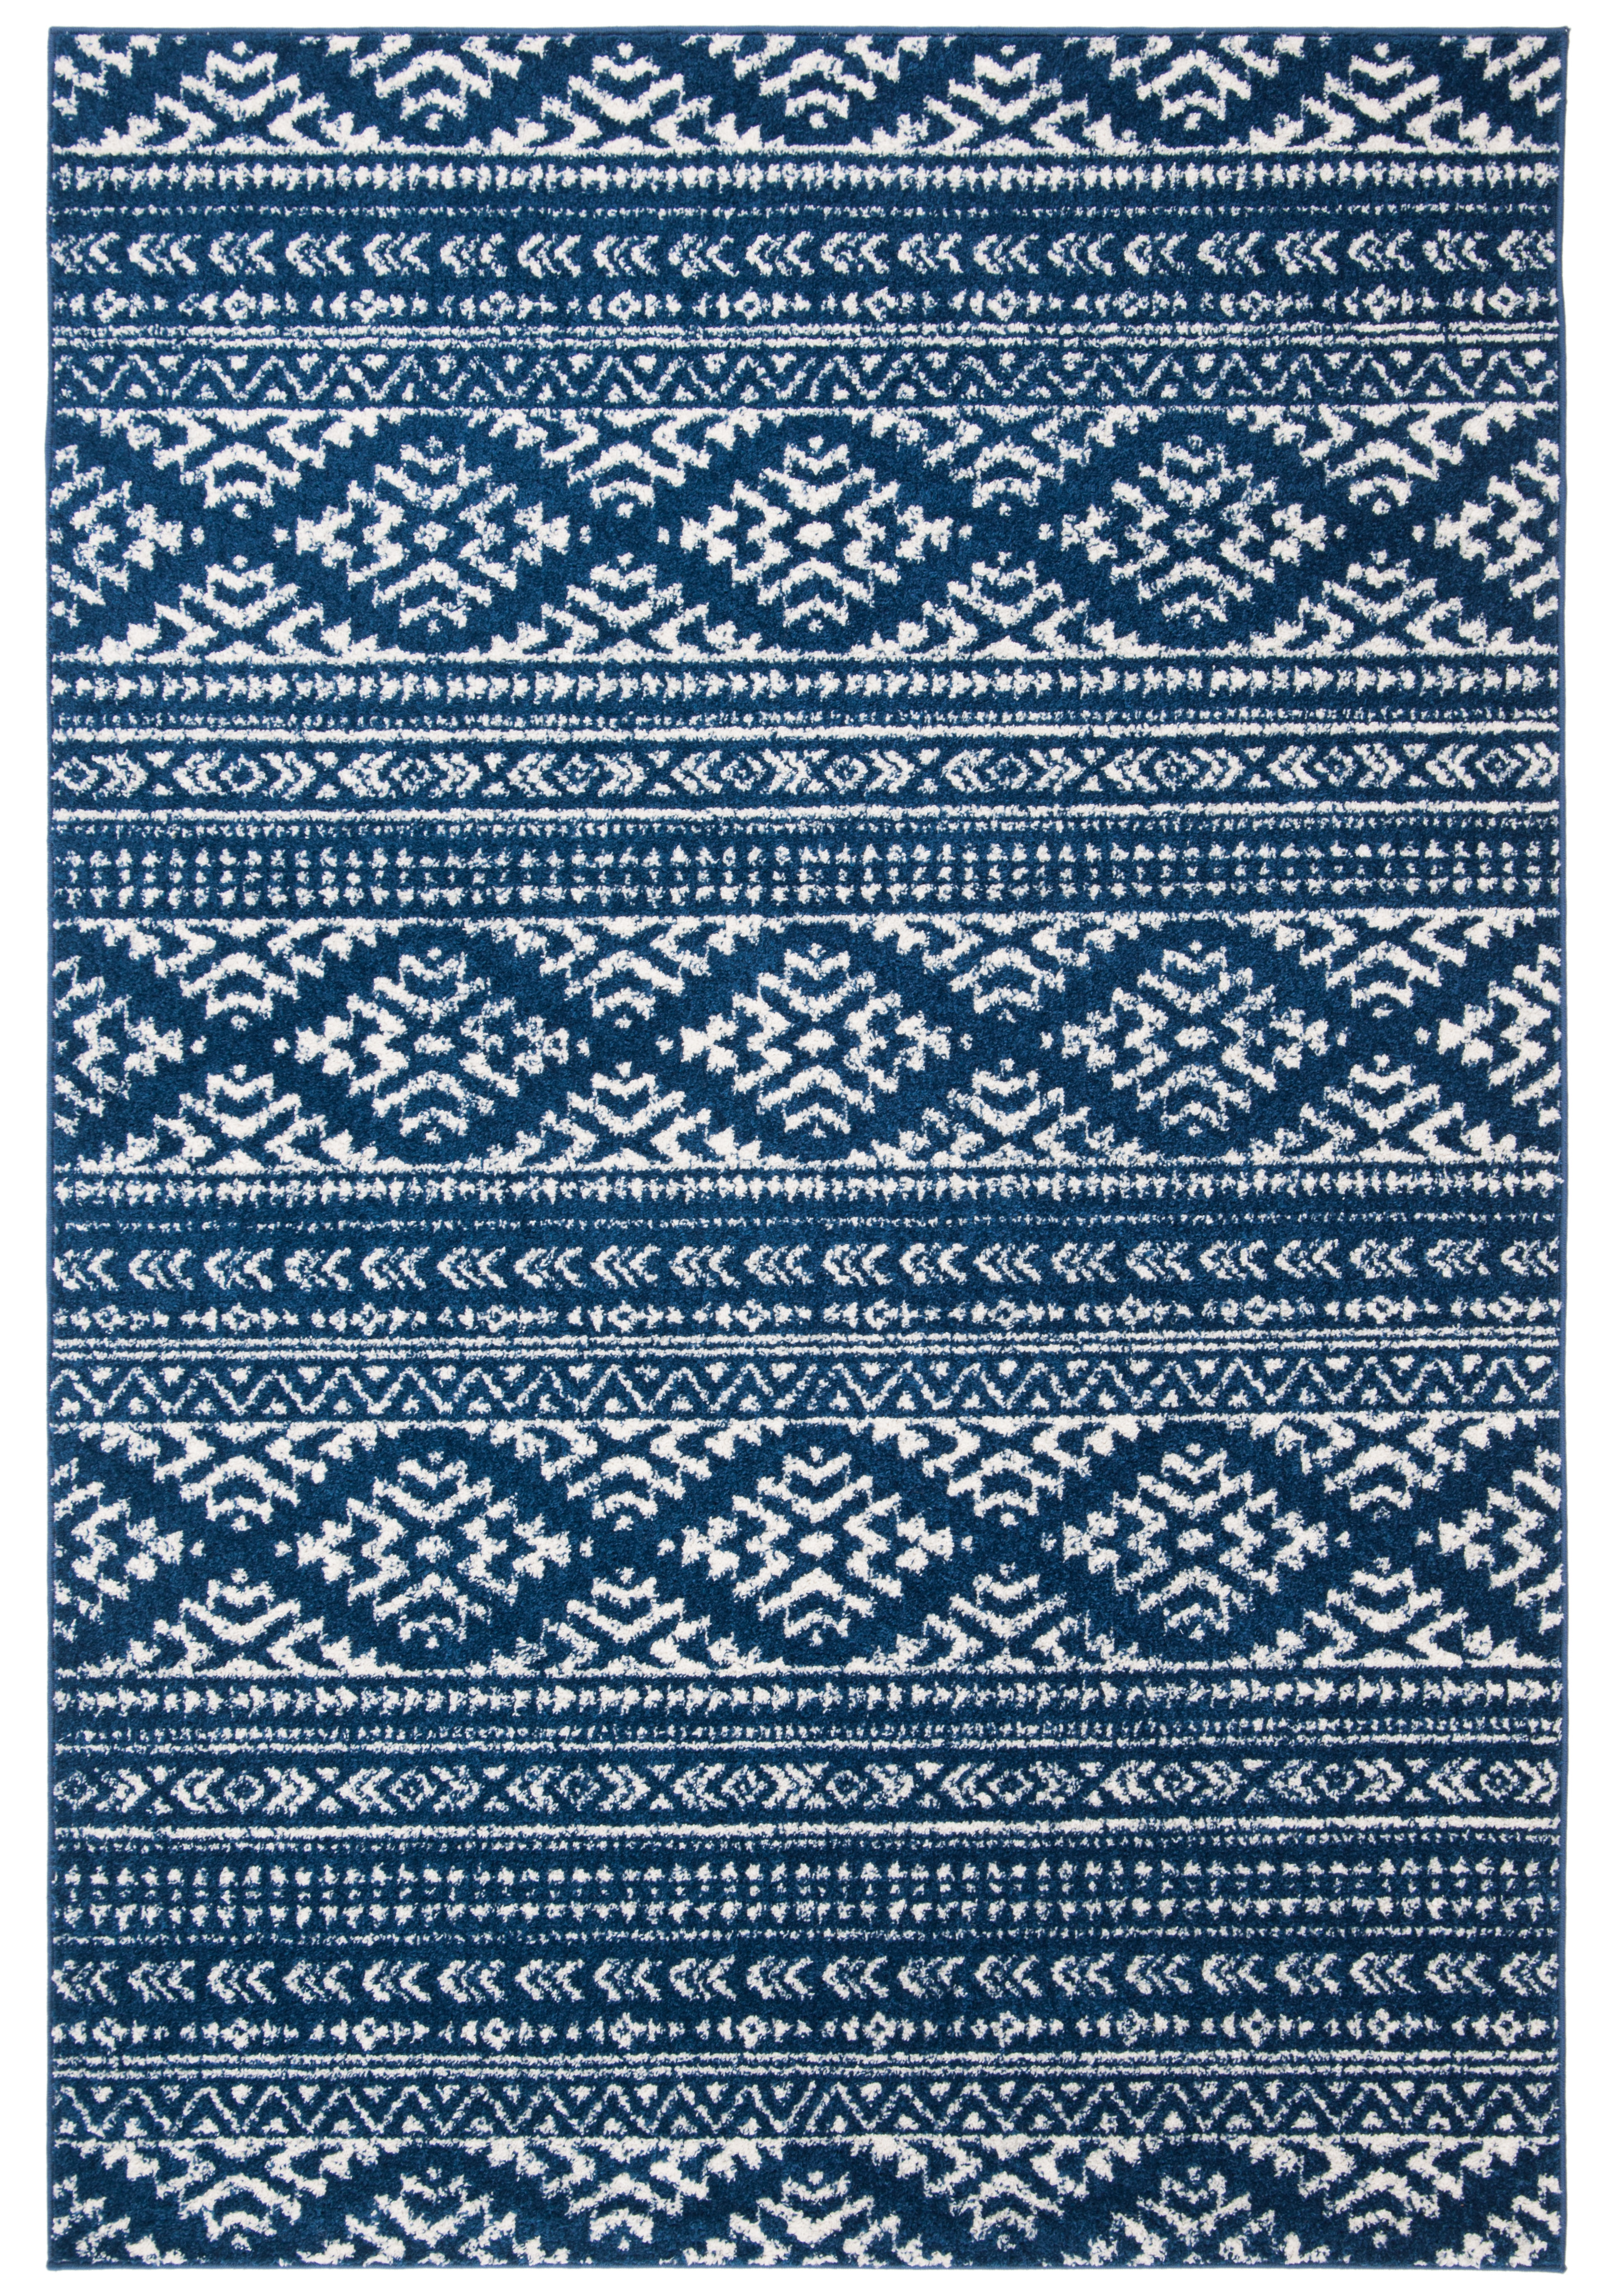 SAFAVIEH Tulum Lakisha Southwestern Area Rug, Navy/Ivory, 5'3" x 7'6" - image 5 of 10